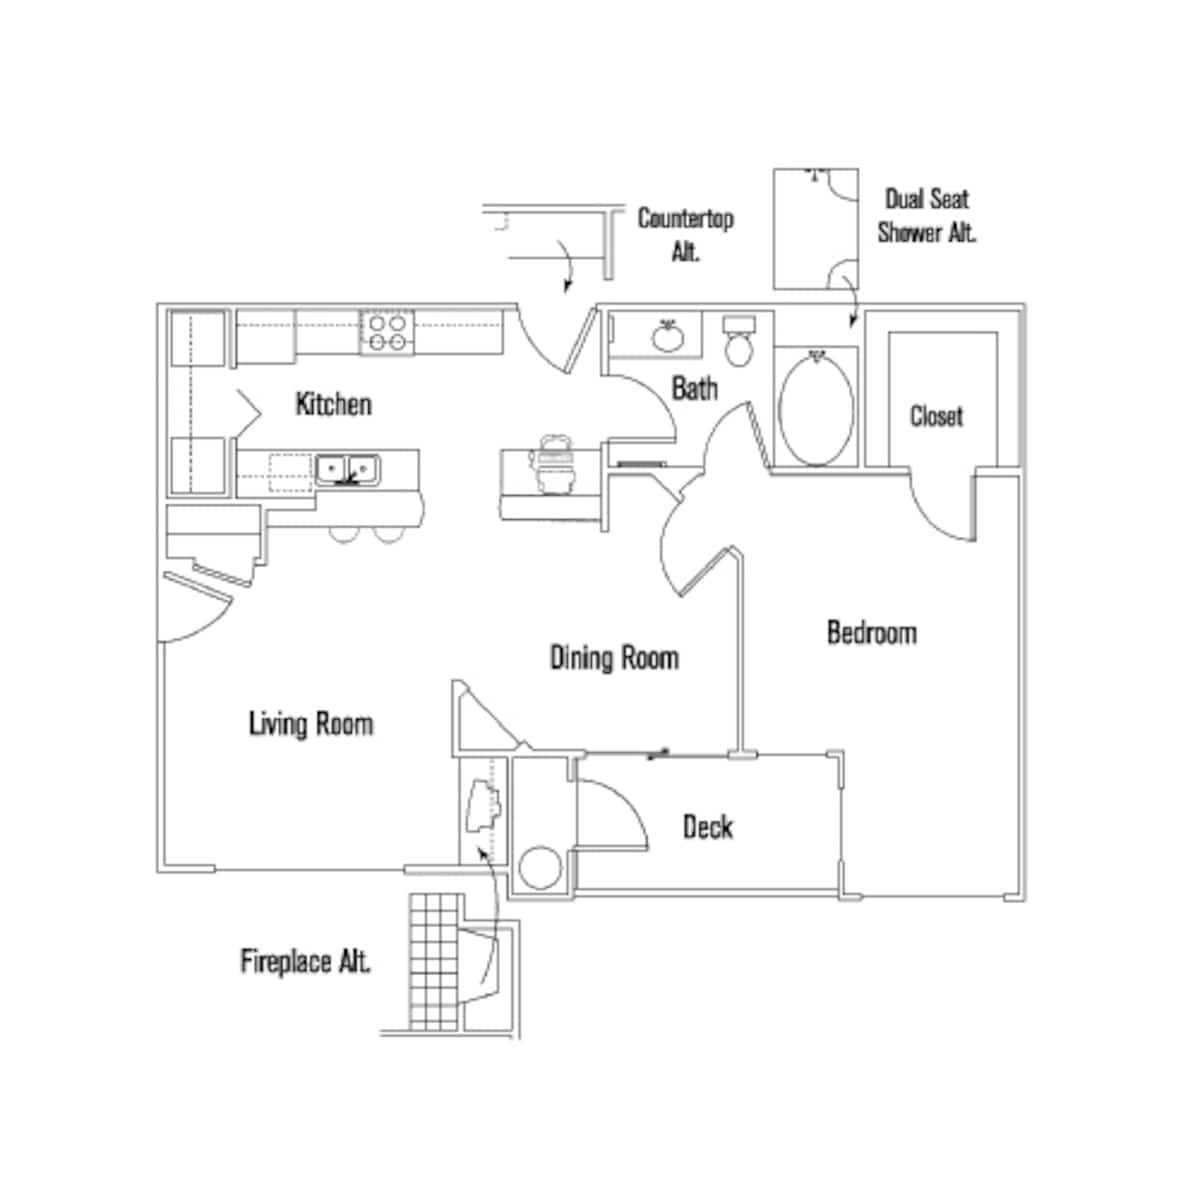 Floorplan diagram for Verdi, showing 1 bedroom